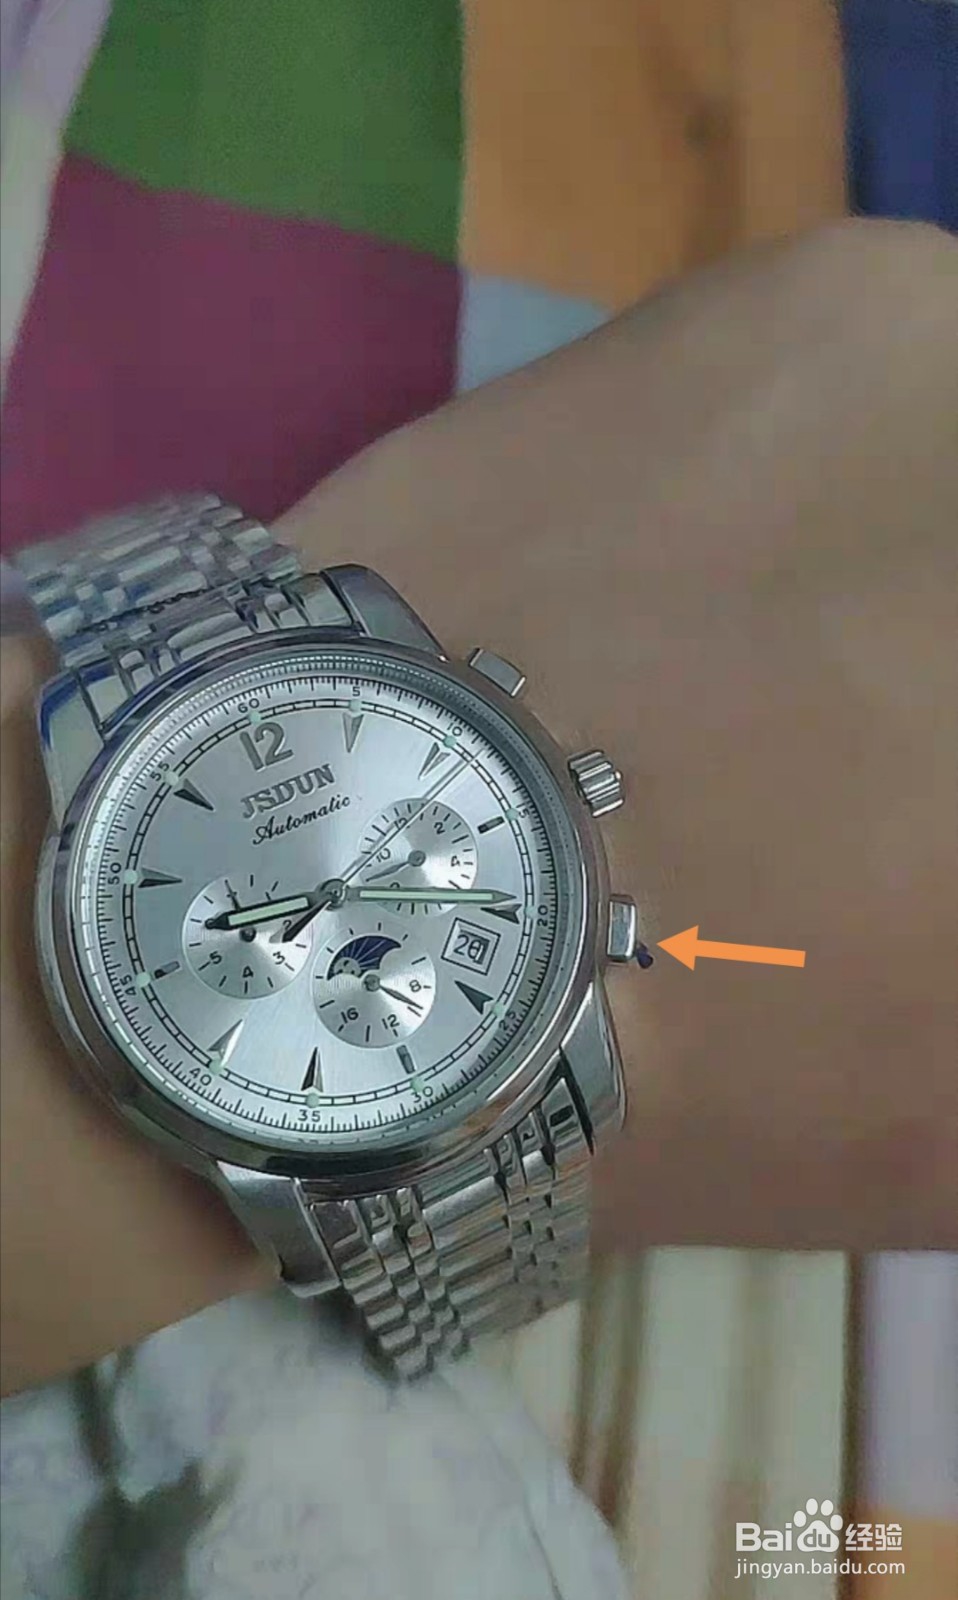 2、手表进水生锈应该如何修复和处理